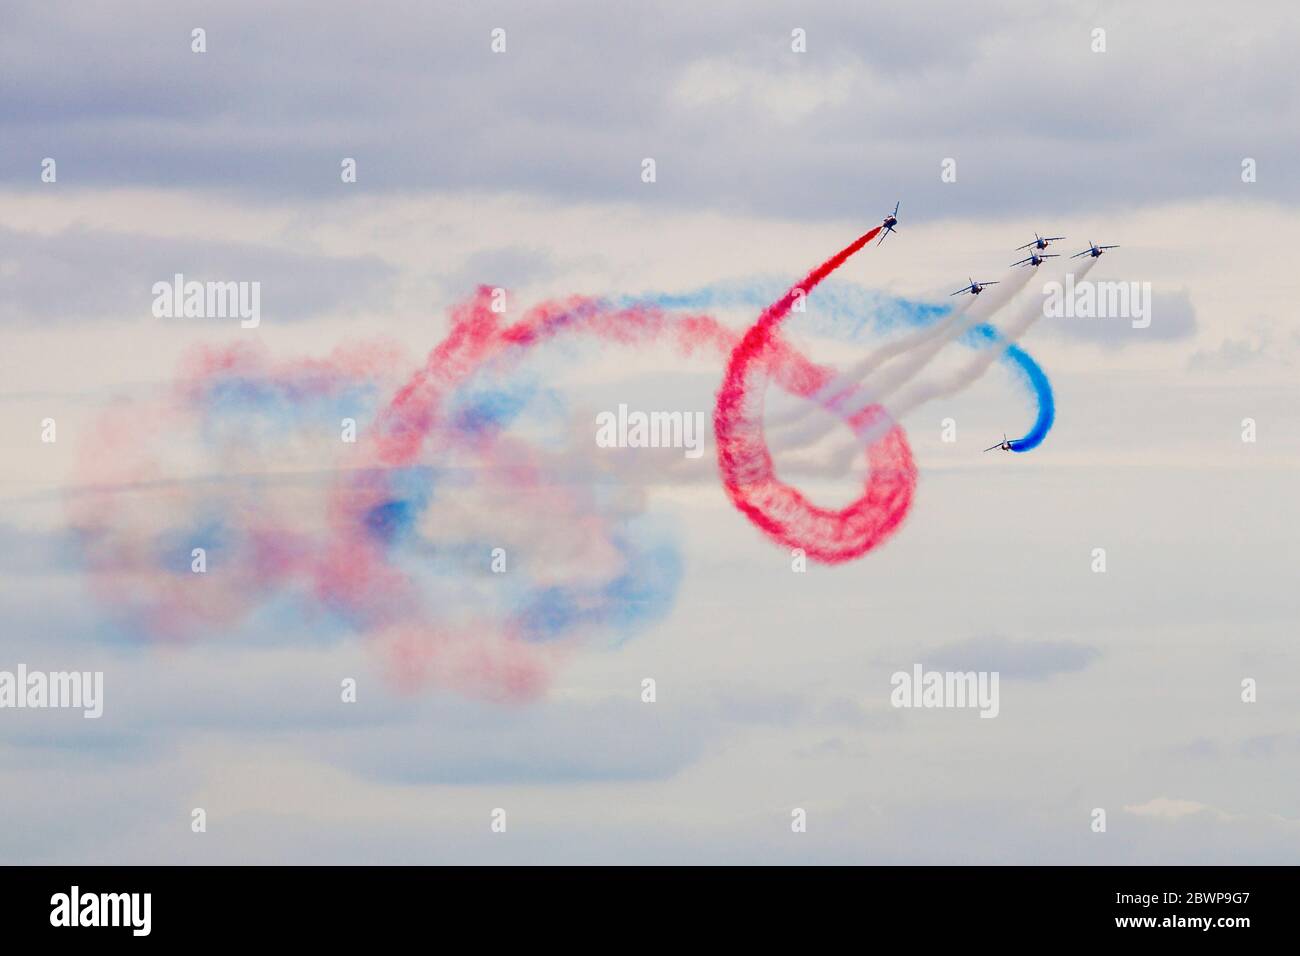 Anzeige durch die Patrouille de France in Biggin Hill Airshow Stockfoto